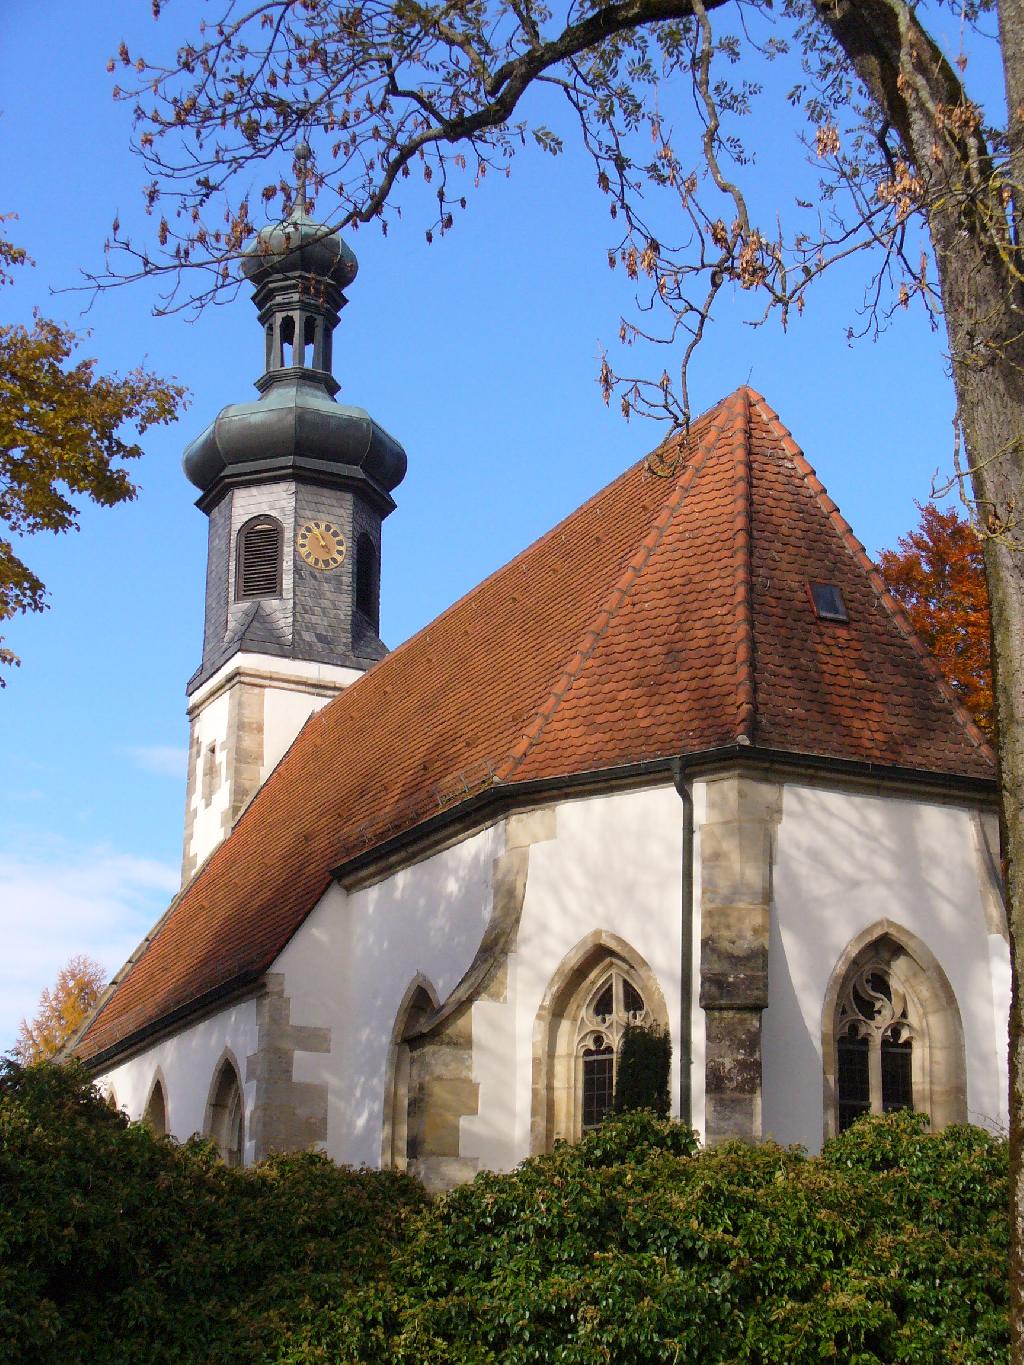 Kloster Adelberg in Adelberg